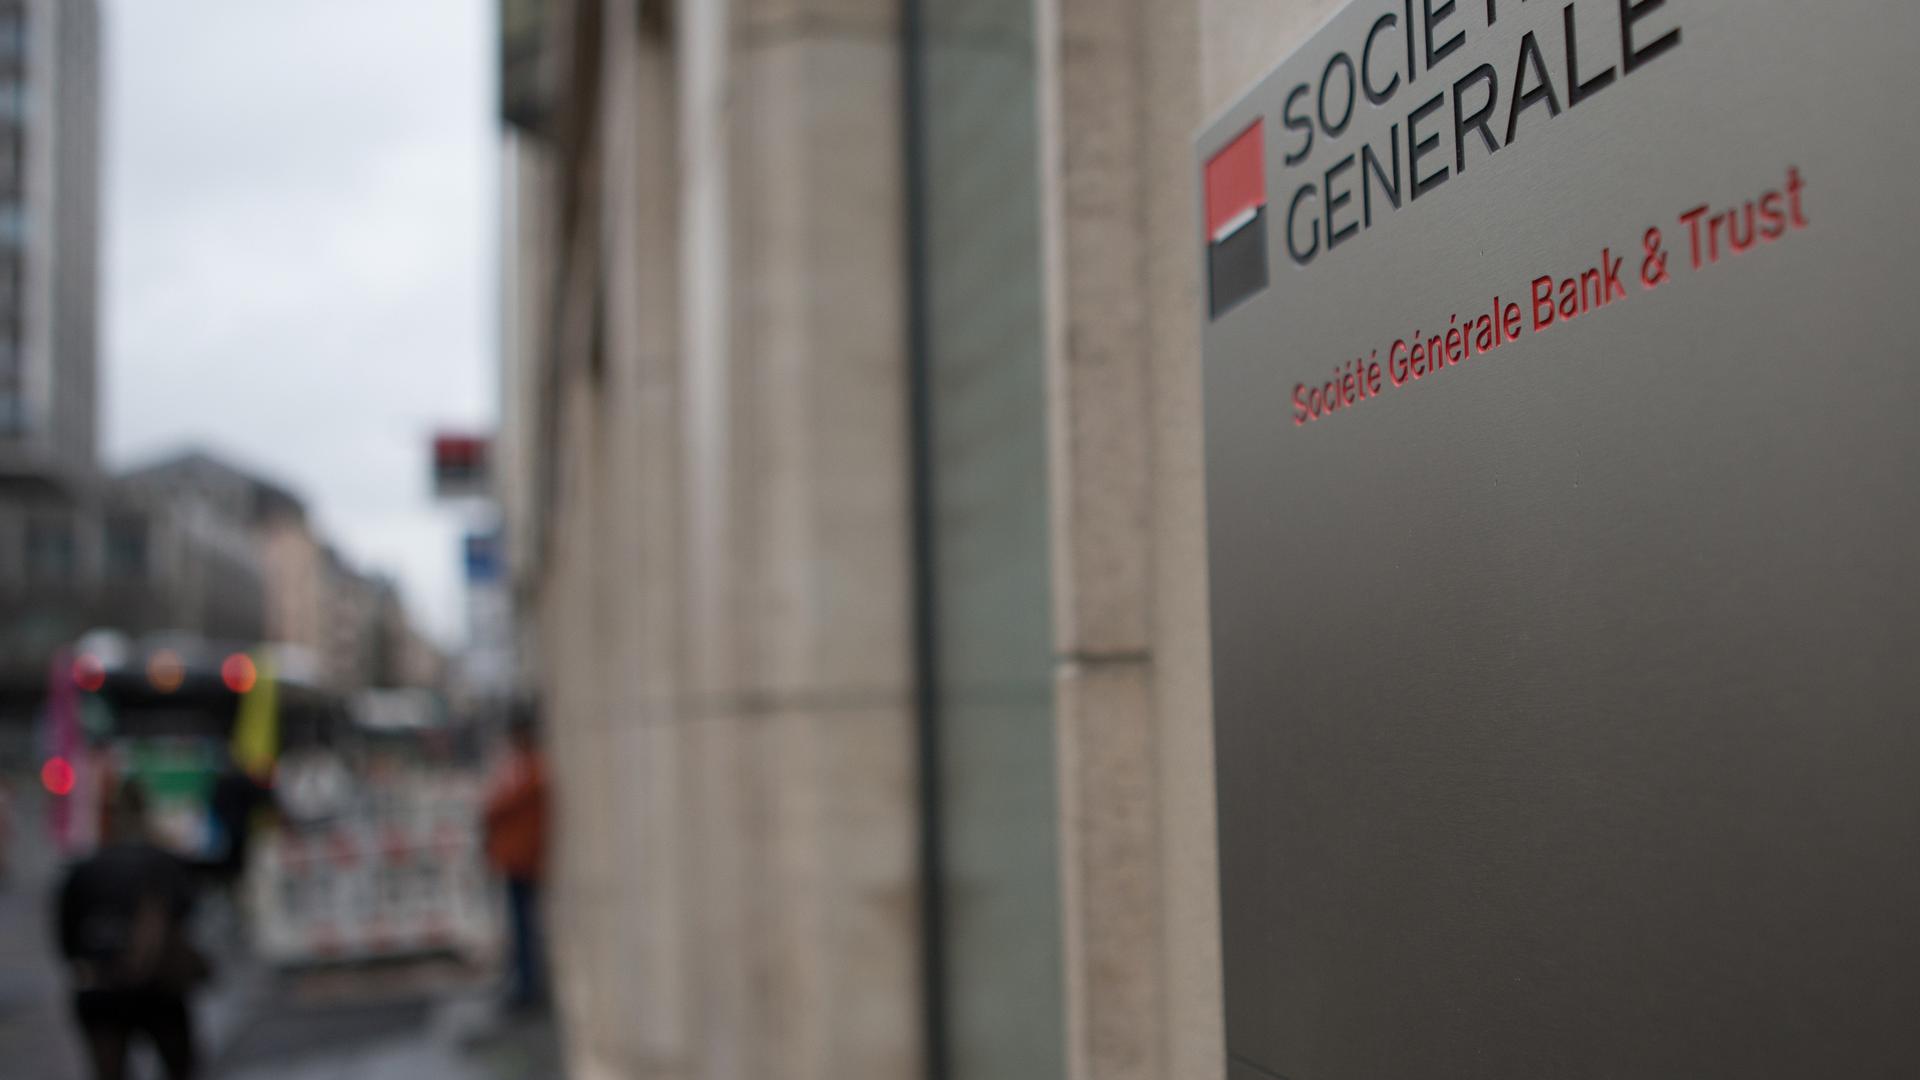 La Société générale fait partie des cinq banques visées par des perquisitions en France ce mardi.